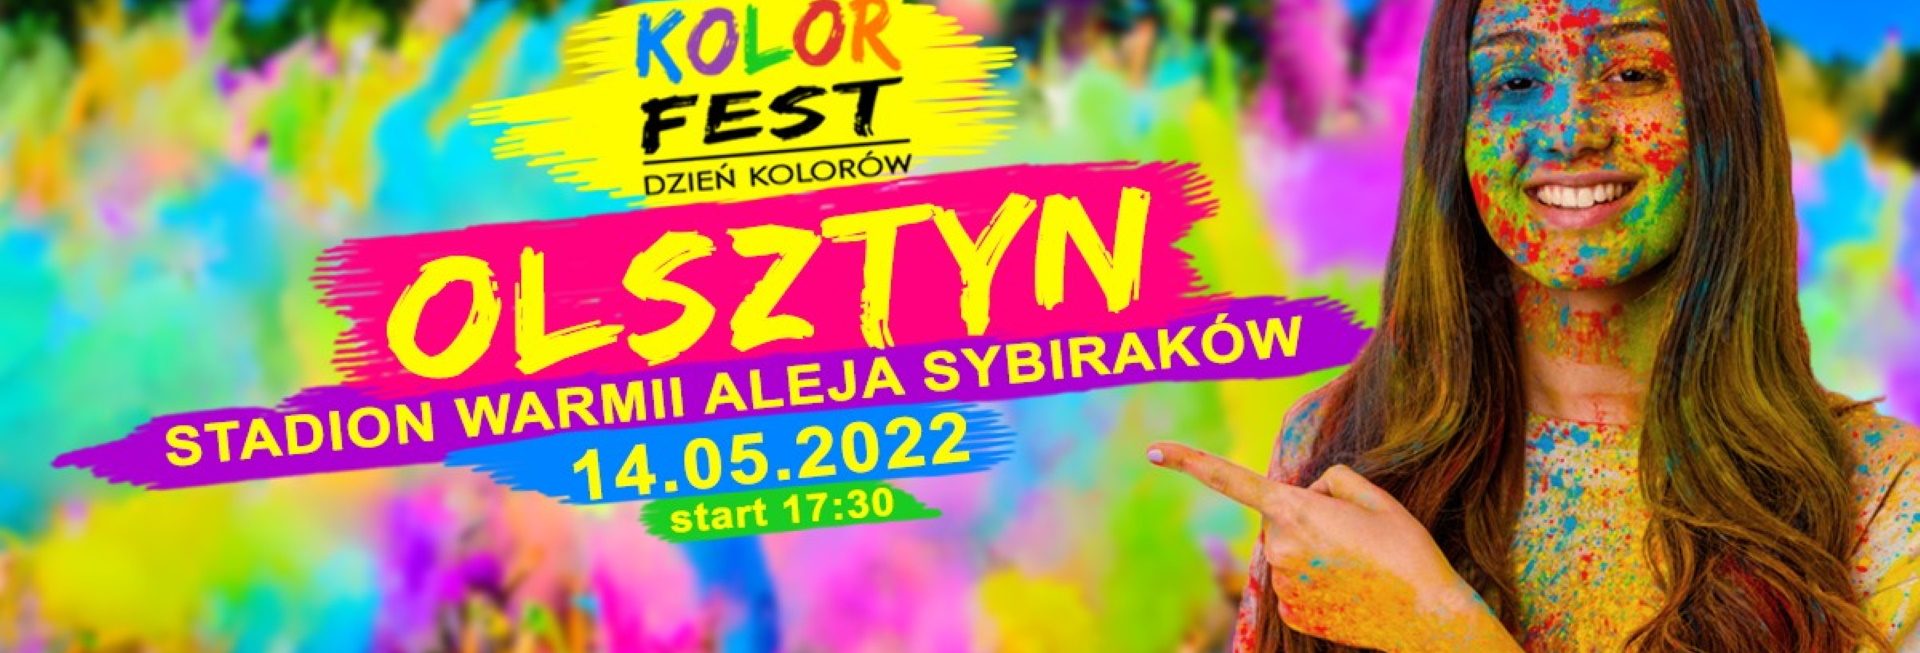 Plakat graficzny zapraszający do Olsztyna na Kolor Fest Olsztyn - Dzień Kolorów Holi w Olsztynie 2022.